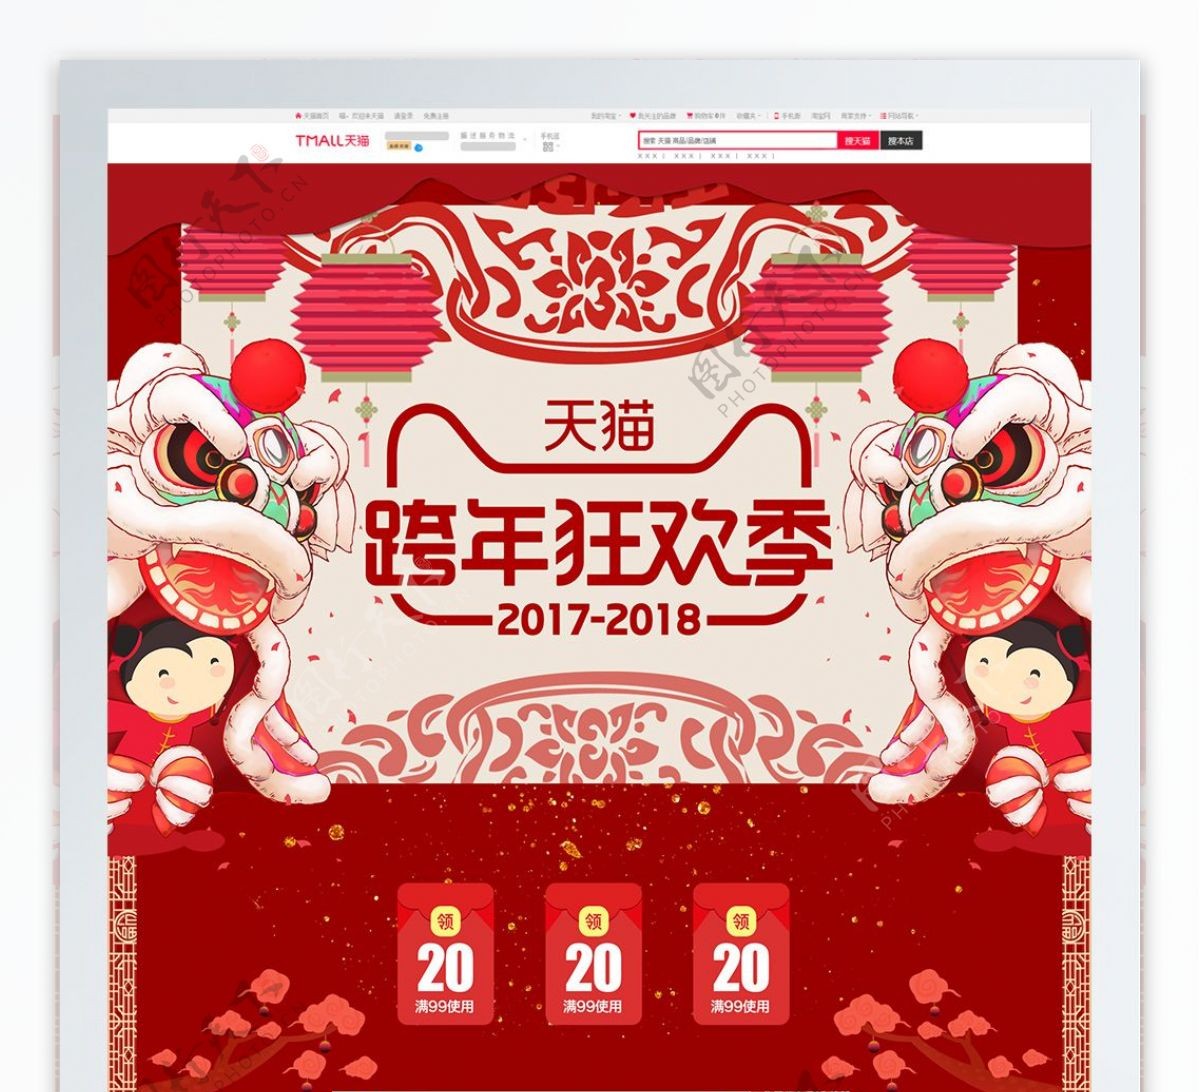 红色中国风元旦跨年狂欢季箱包首页psd